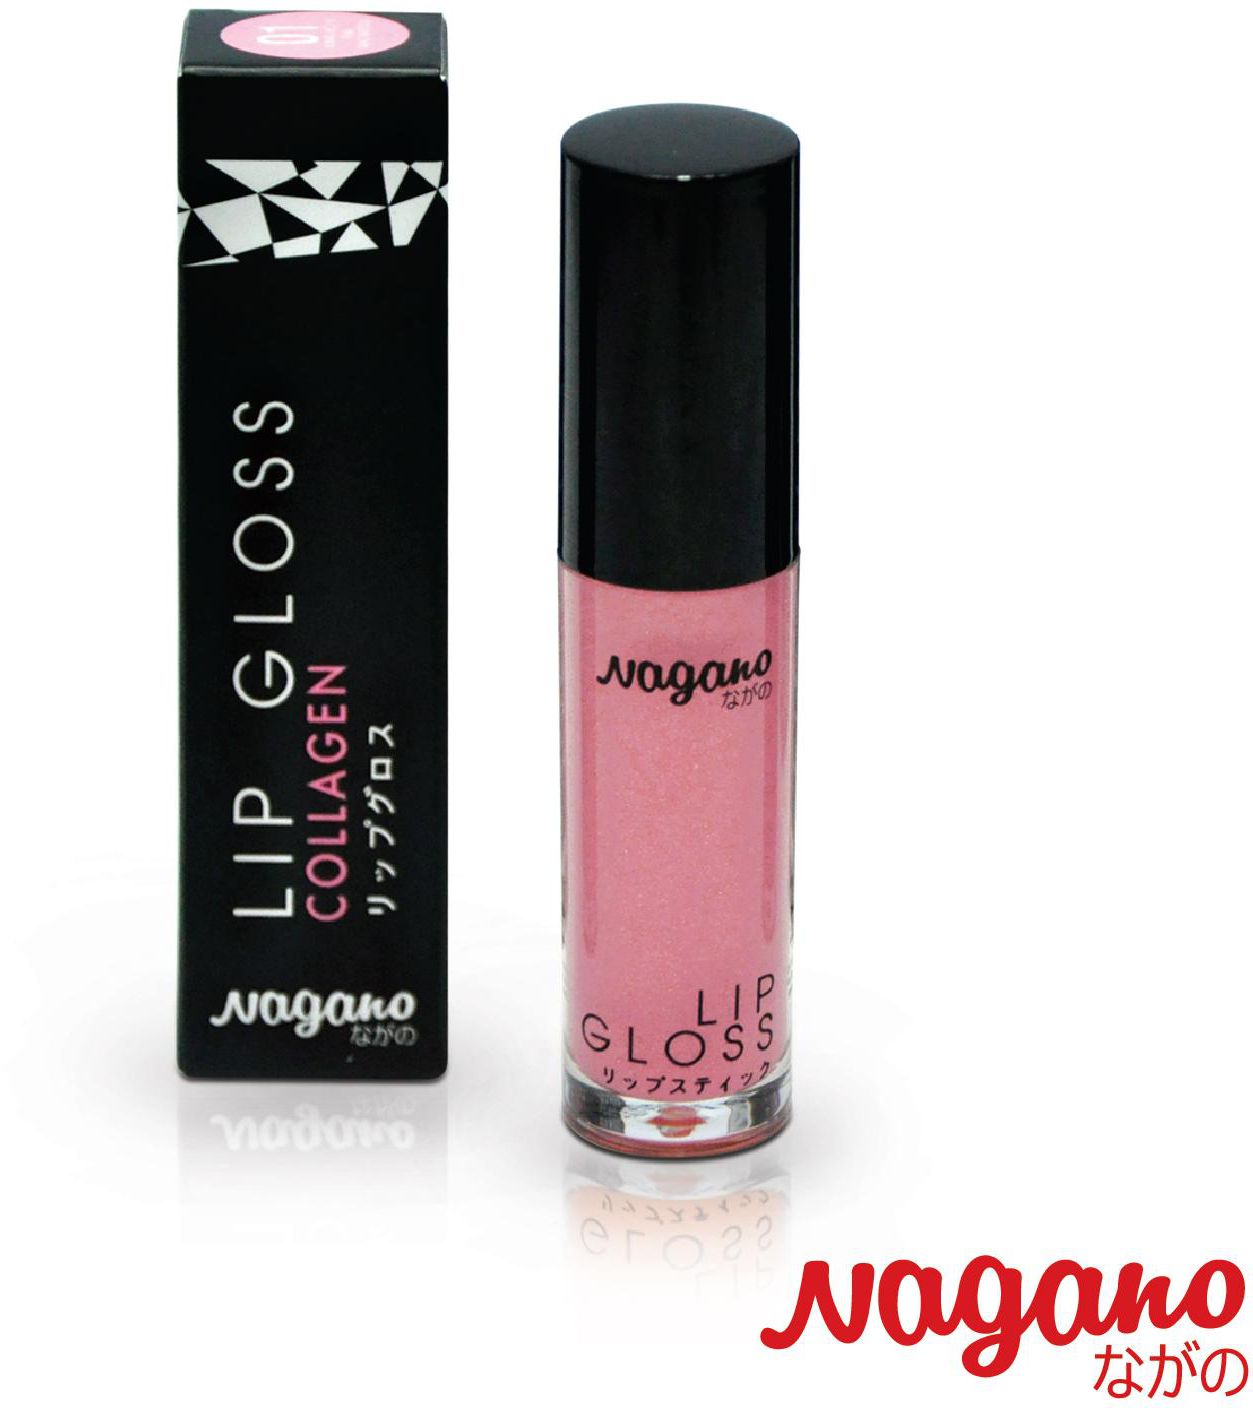 Nagano Lip Gloss (Pink Macaroon)